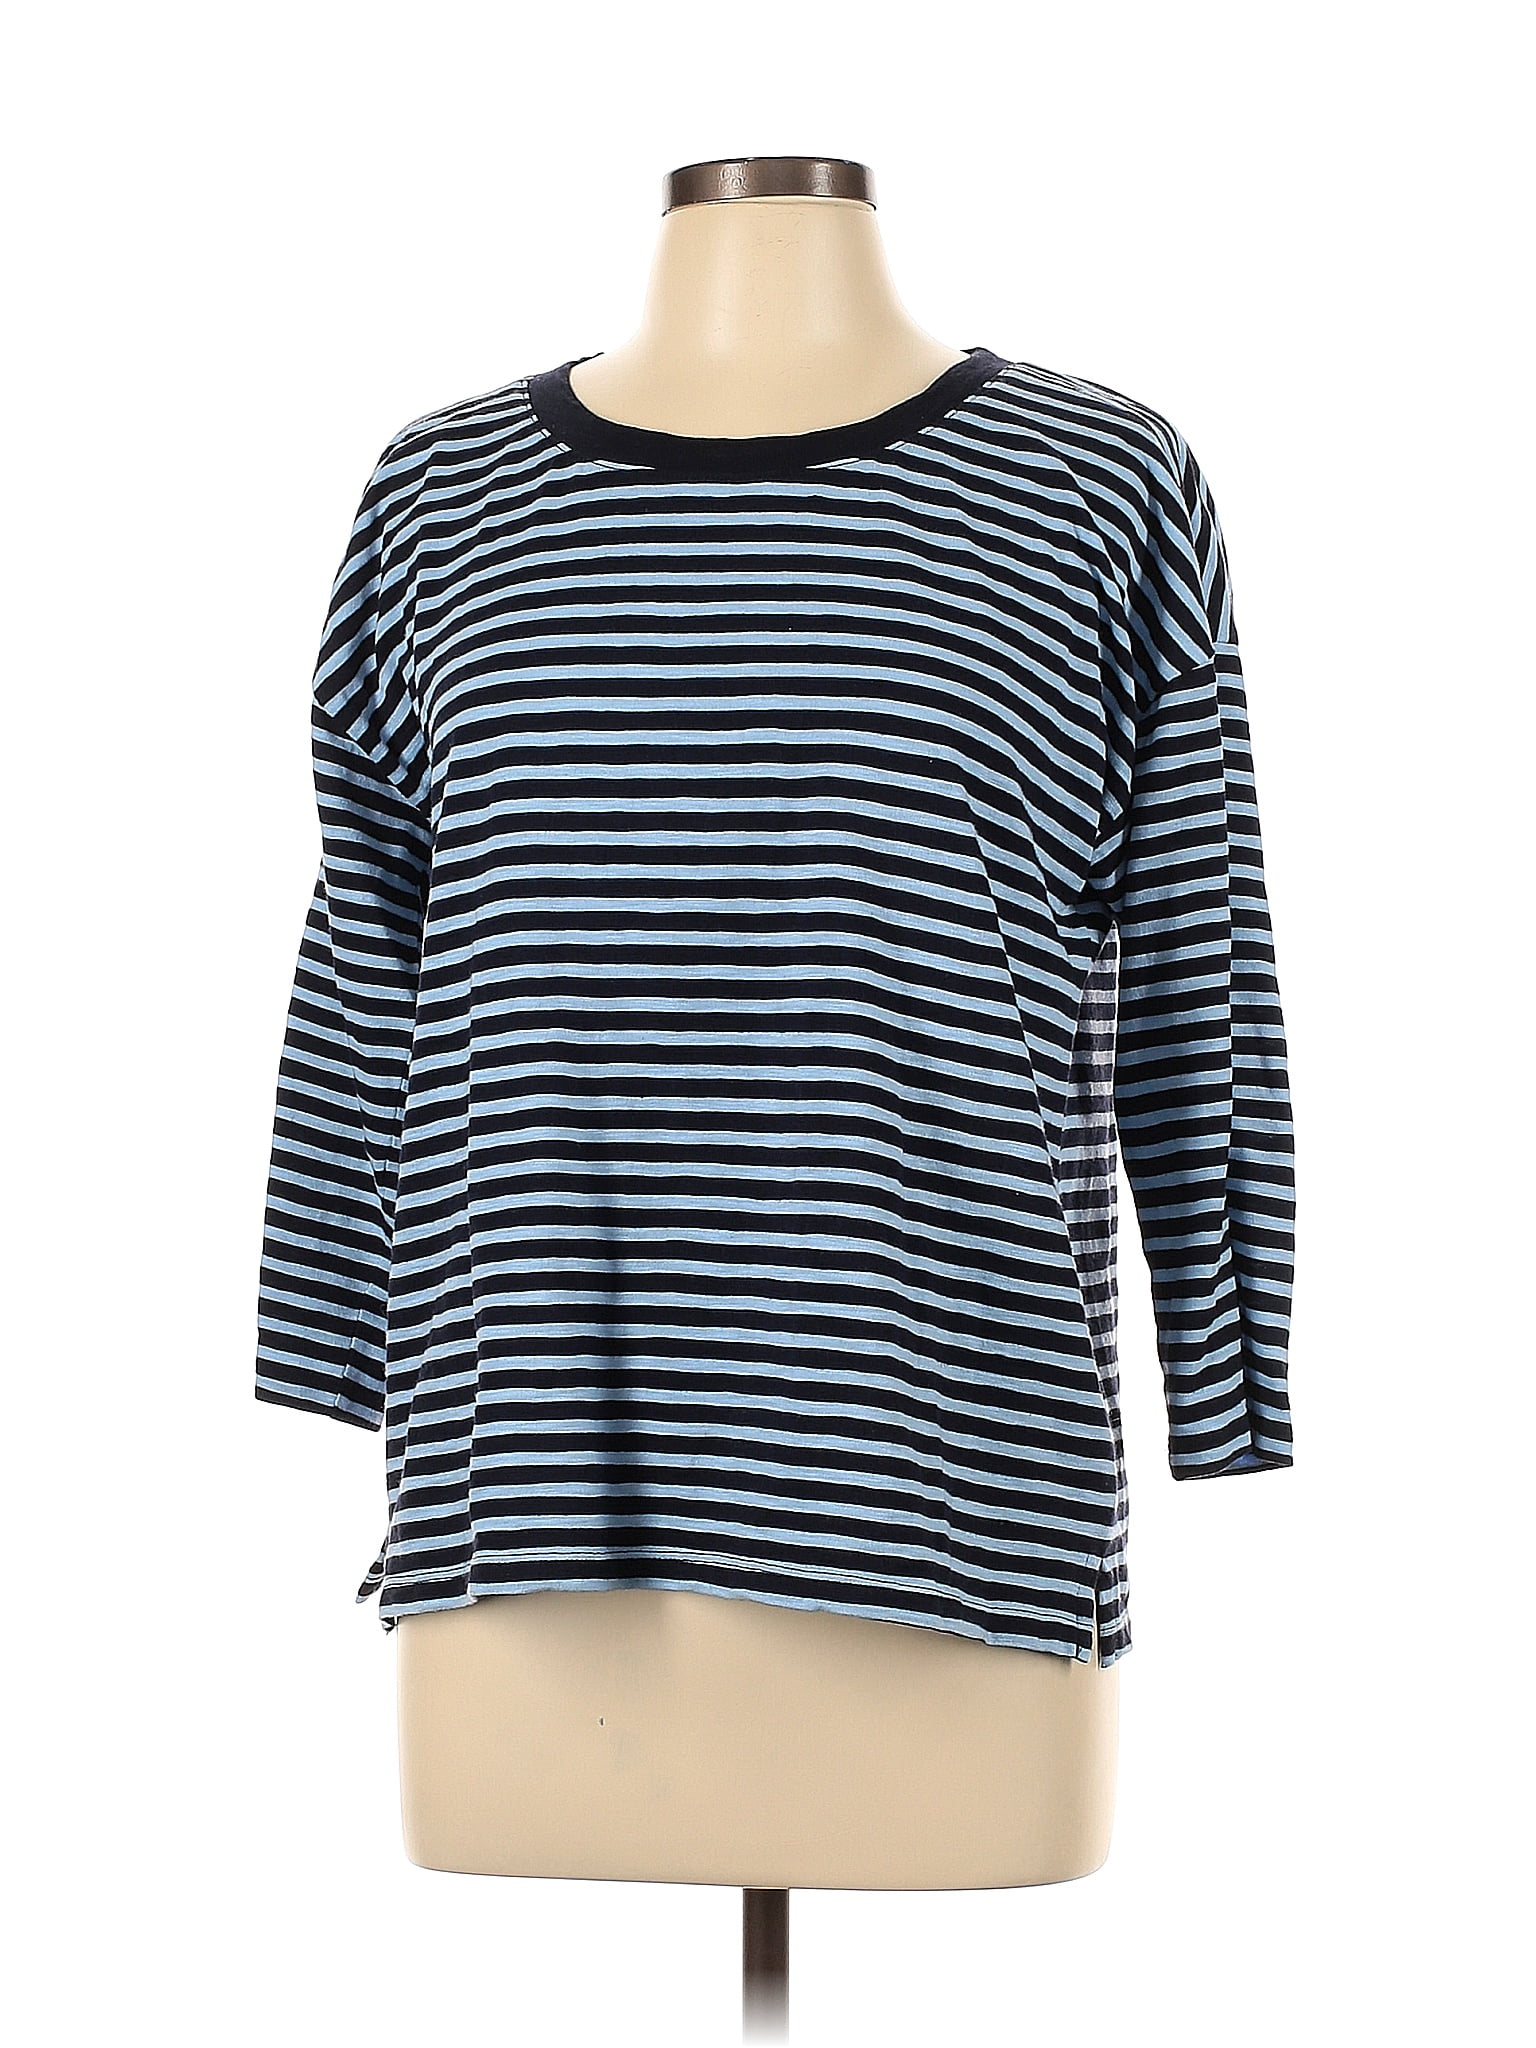 Talbots 100% Cotton Color Block Stripes Blue Long Sleeve T-Shirt Size L ...